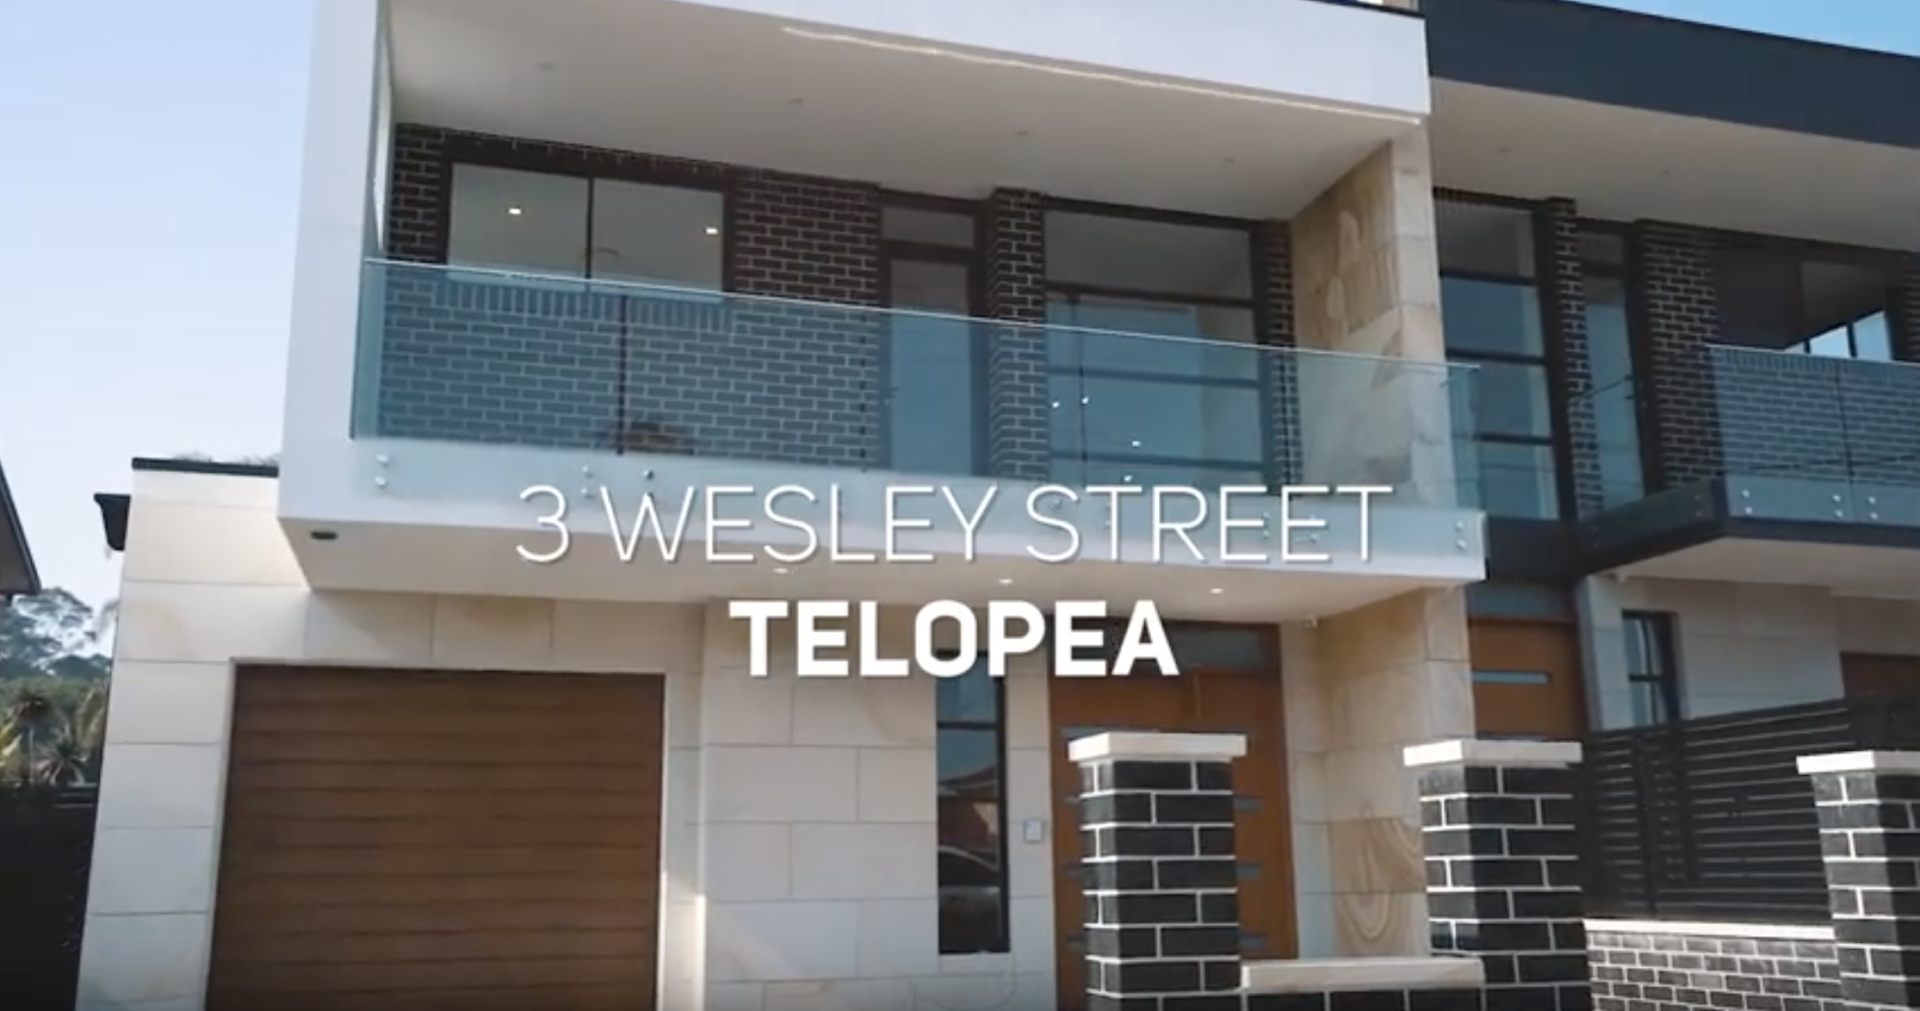 3 Wesley street telopea video of brick home